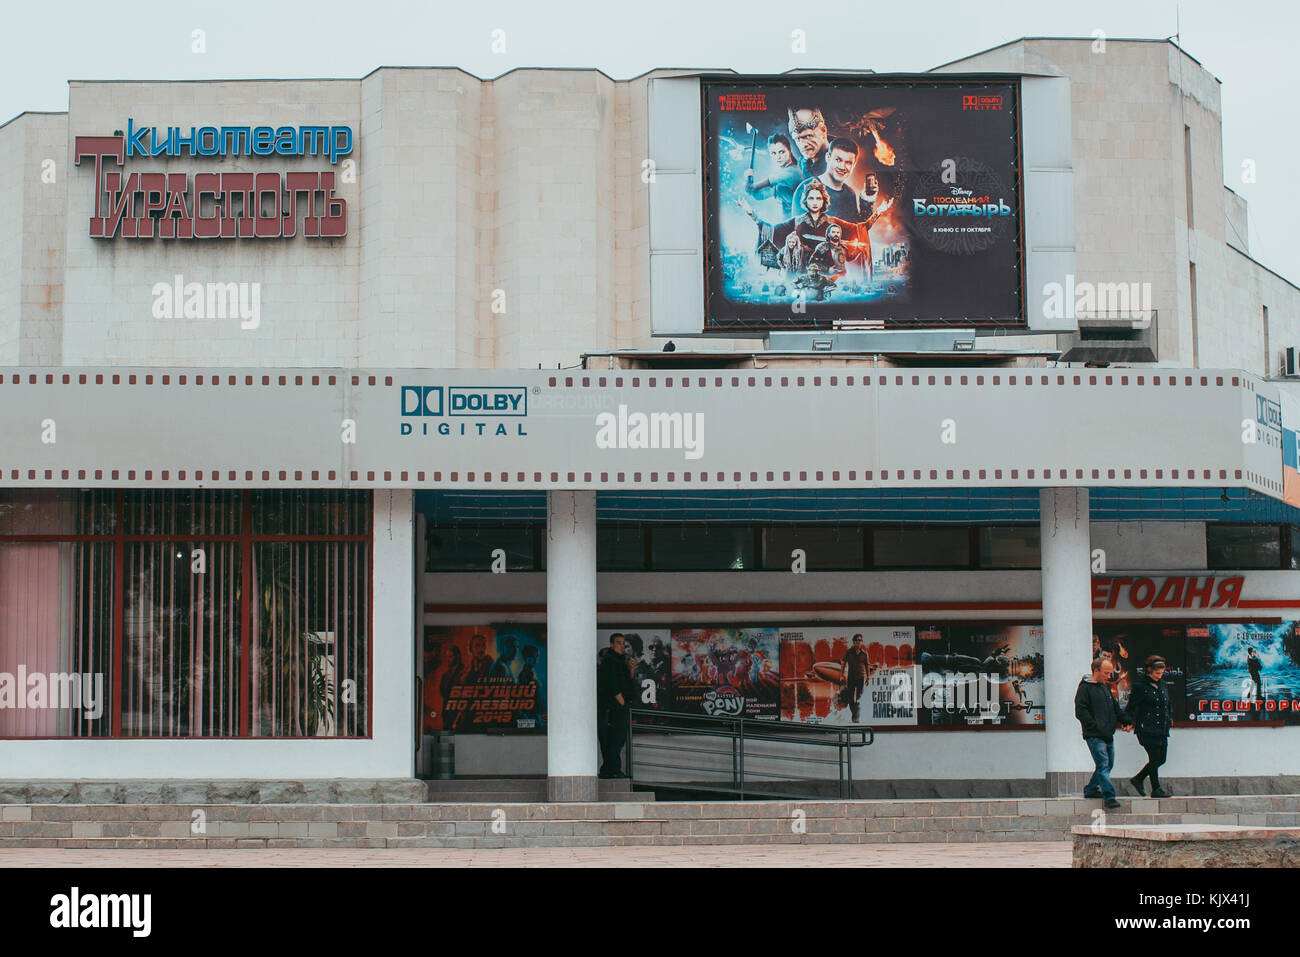 Manifesti la promozione di americani e russi film Blade Runner 2049 e l'ultimo Bogatyr su un cinema in auto-dichiarato membro della Transnistria, Moldavia Foto Stock